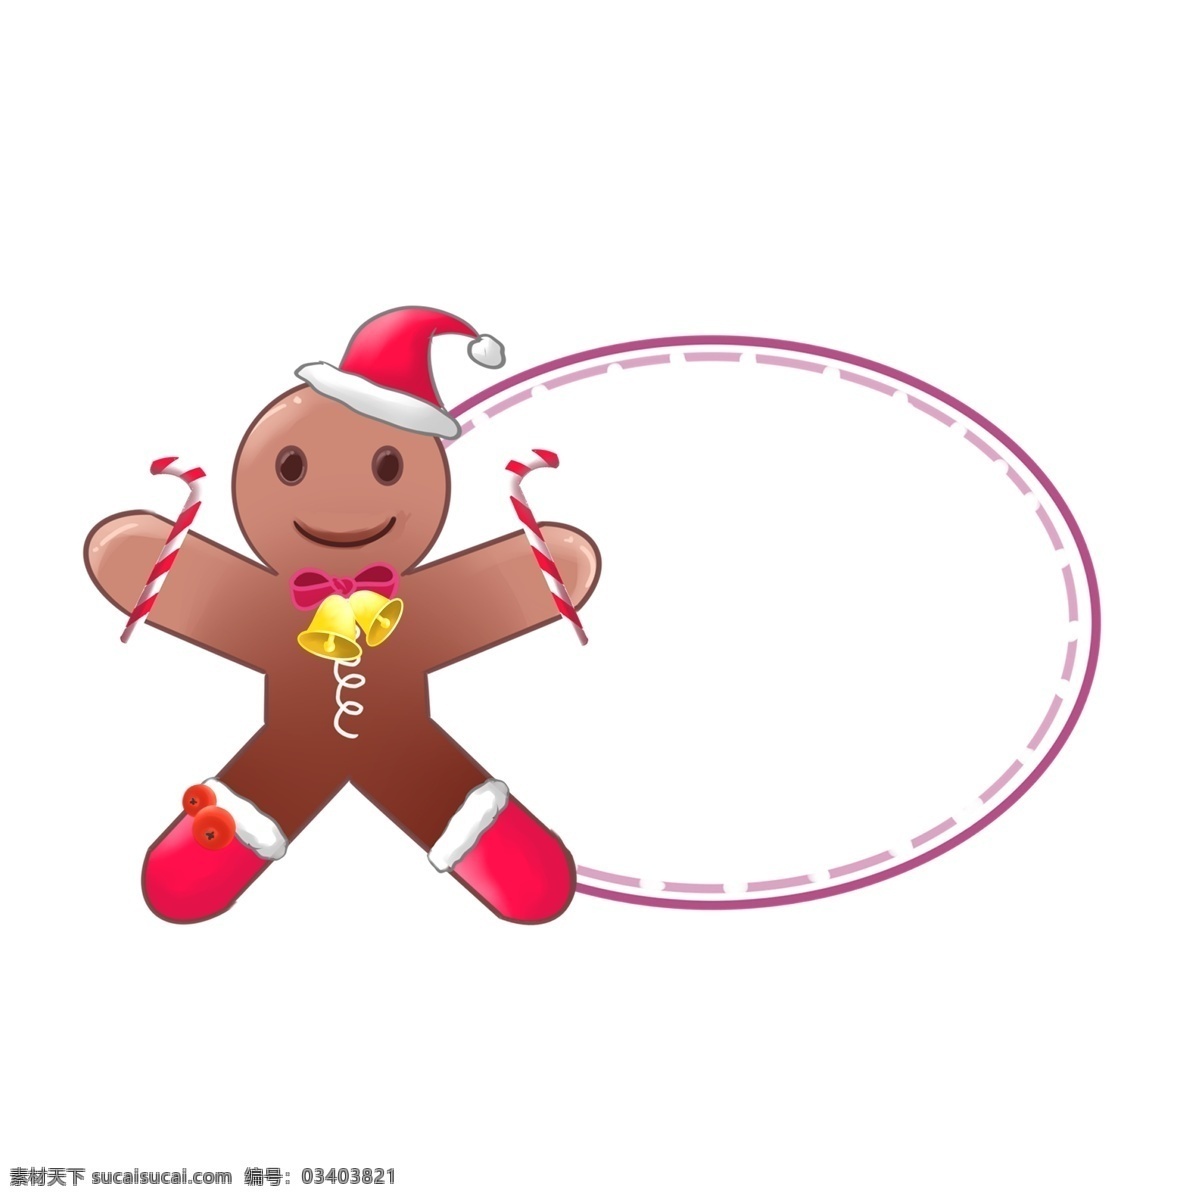 圣诞 玩偶 边框 插画 圣诞节边框 红色的边框 红色的糖果 边框插画 黄色的铃铛 悦耳的铃声 可爱的玩偶